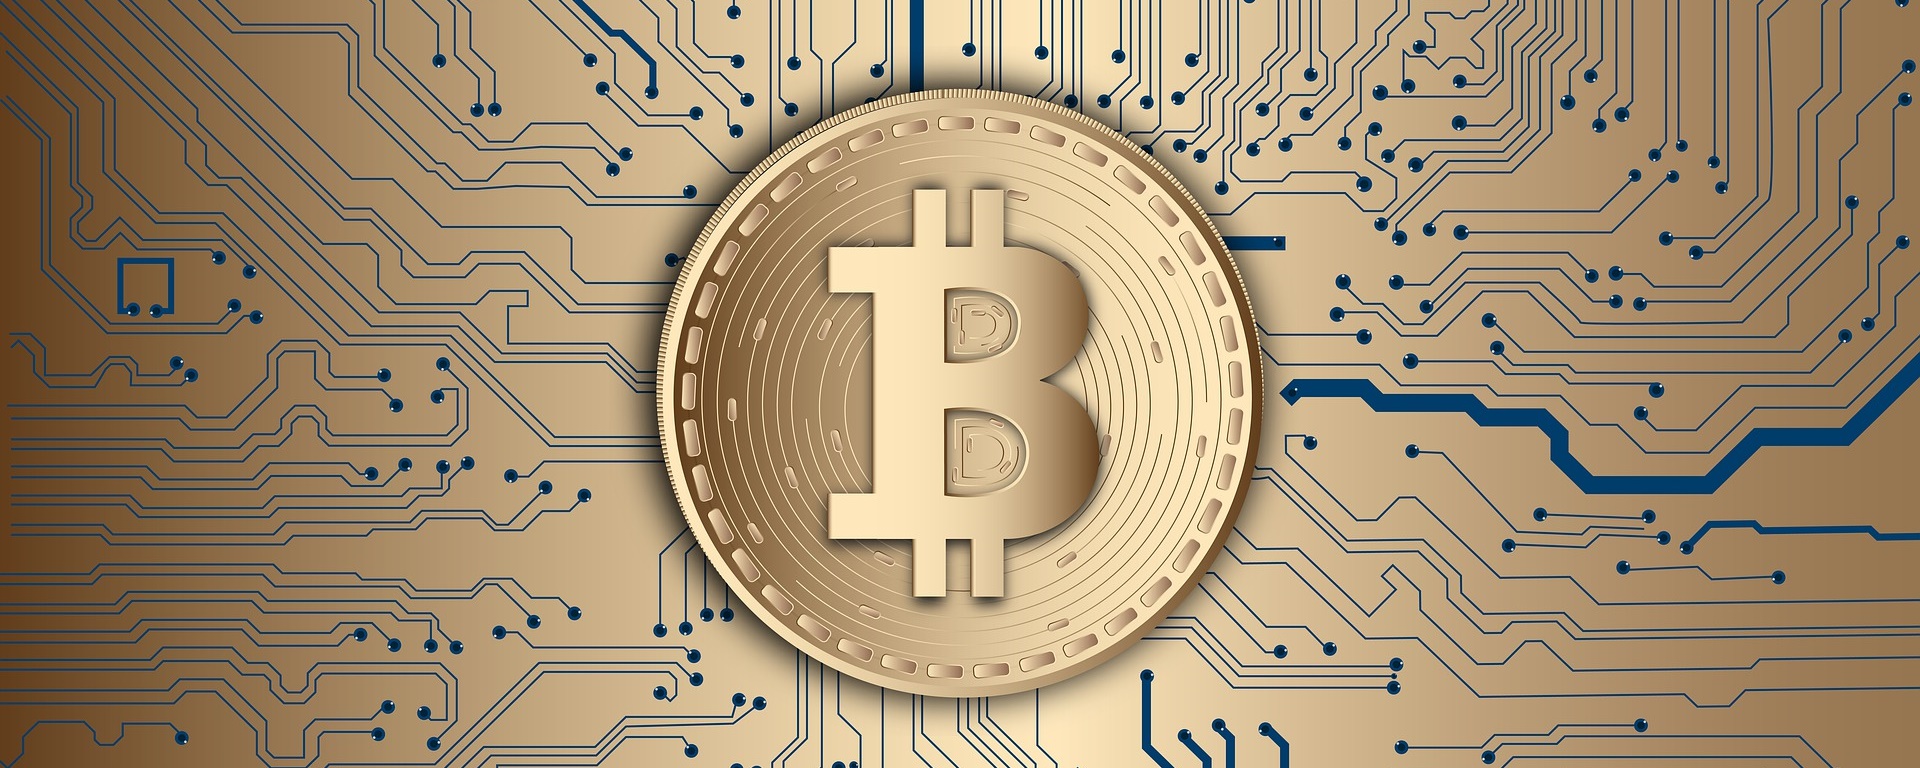 moeda digital gnt por que investir em ethereum ou bitcoin